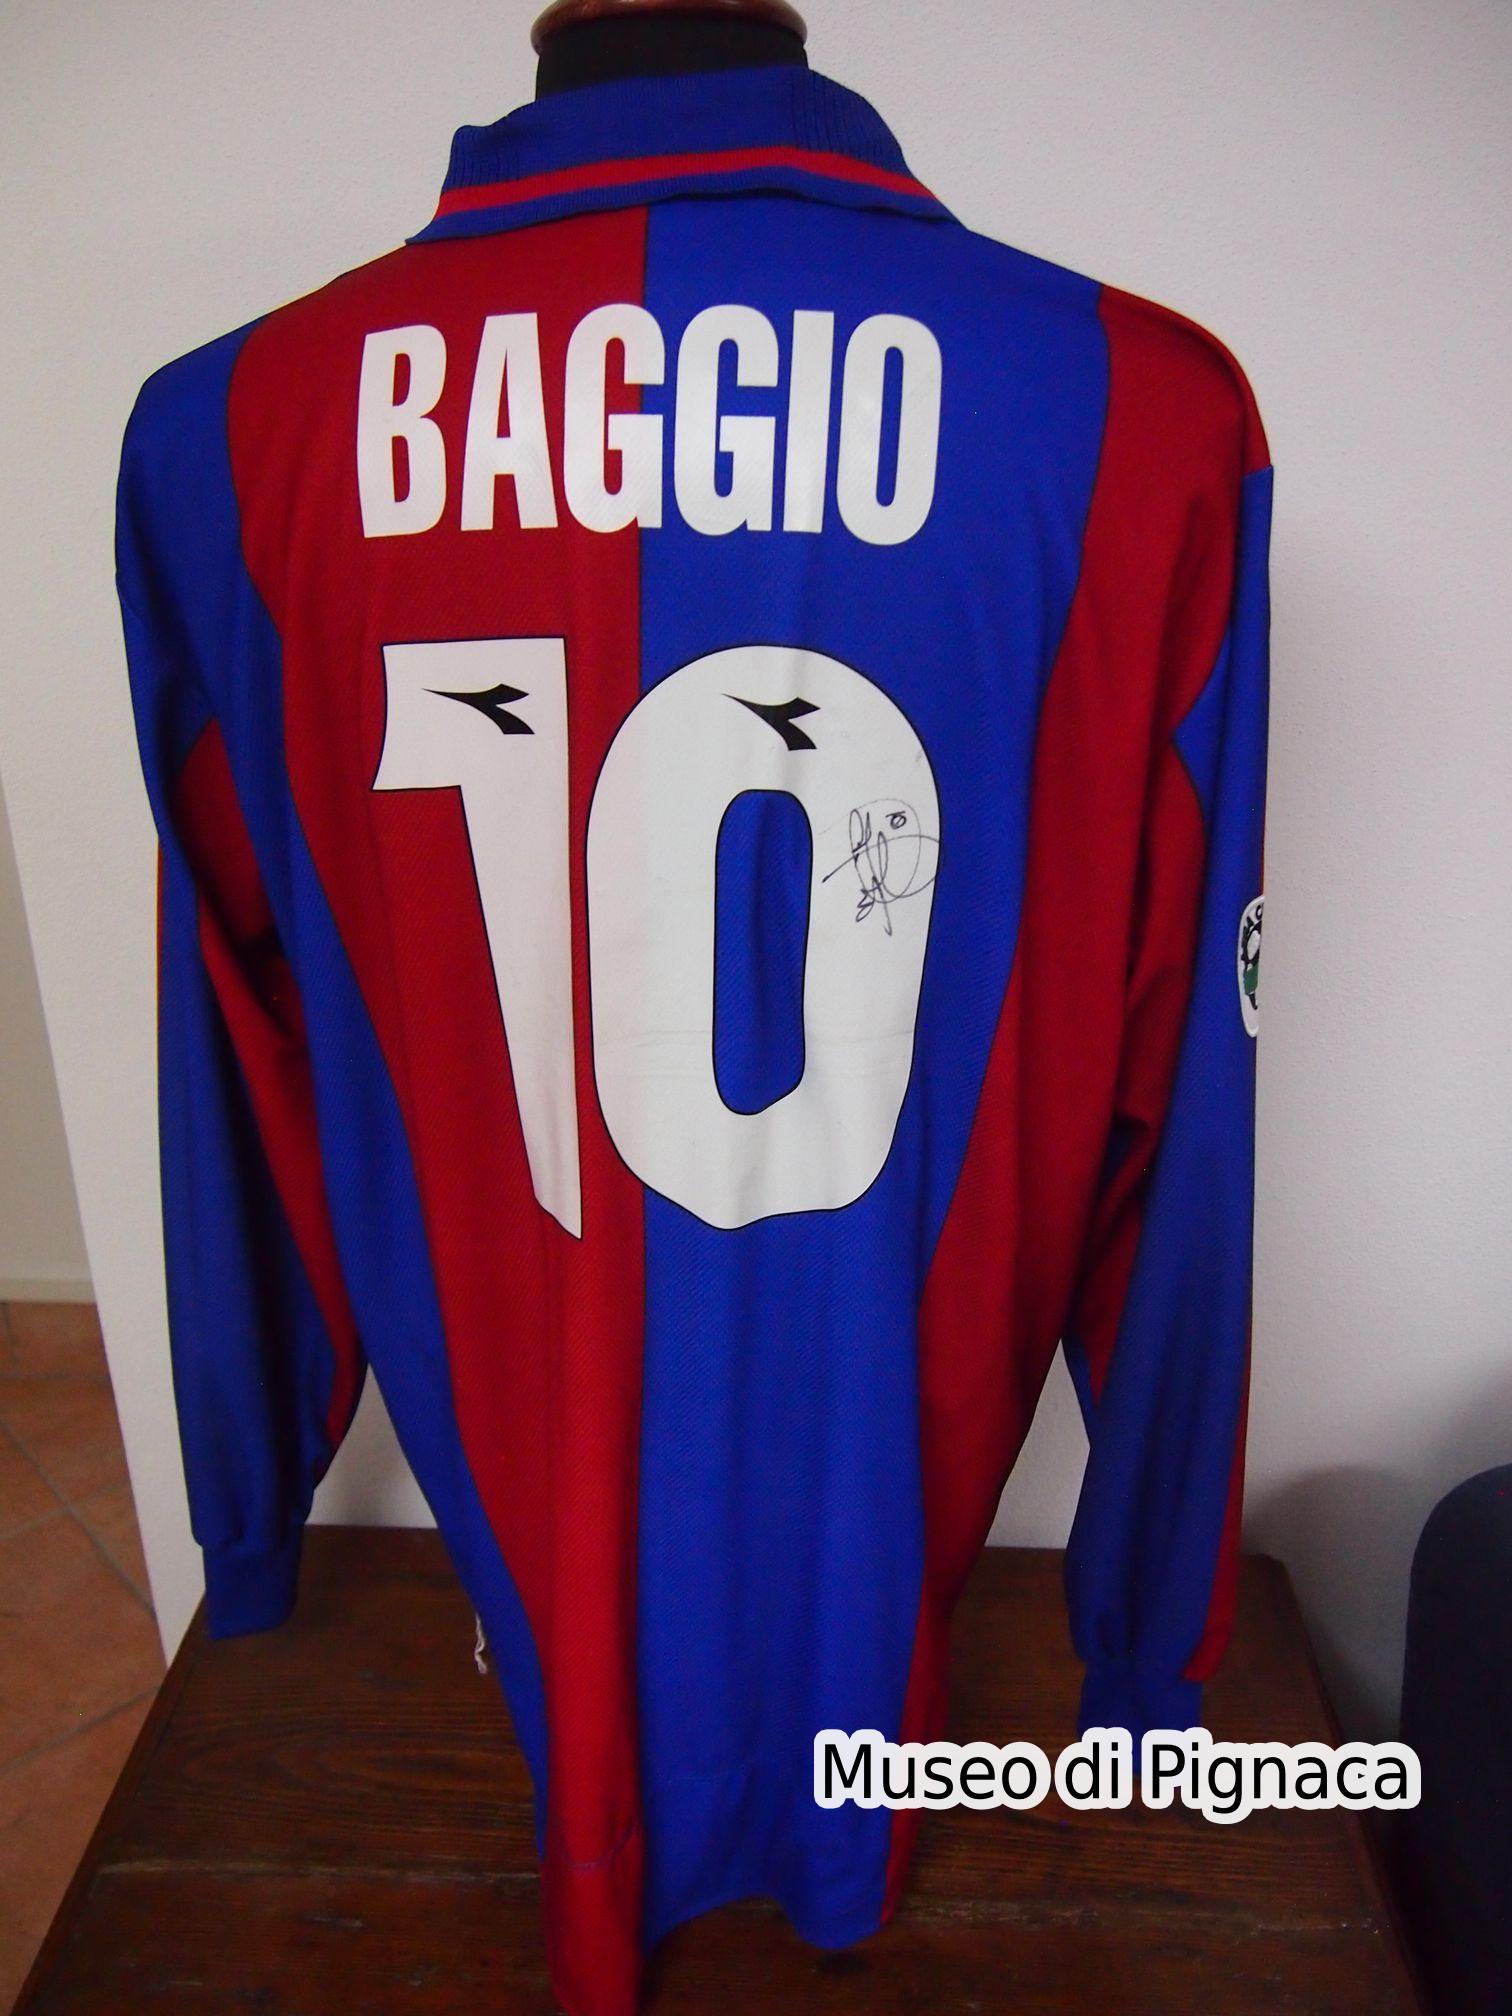 Roberto Baggio - Maglia Bologna FC 1997-98 (Retro)